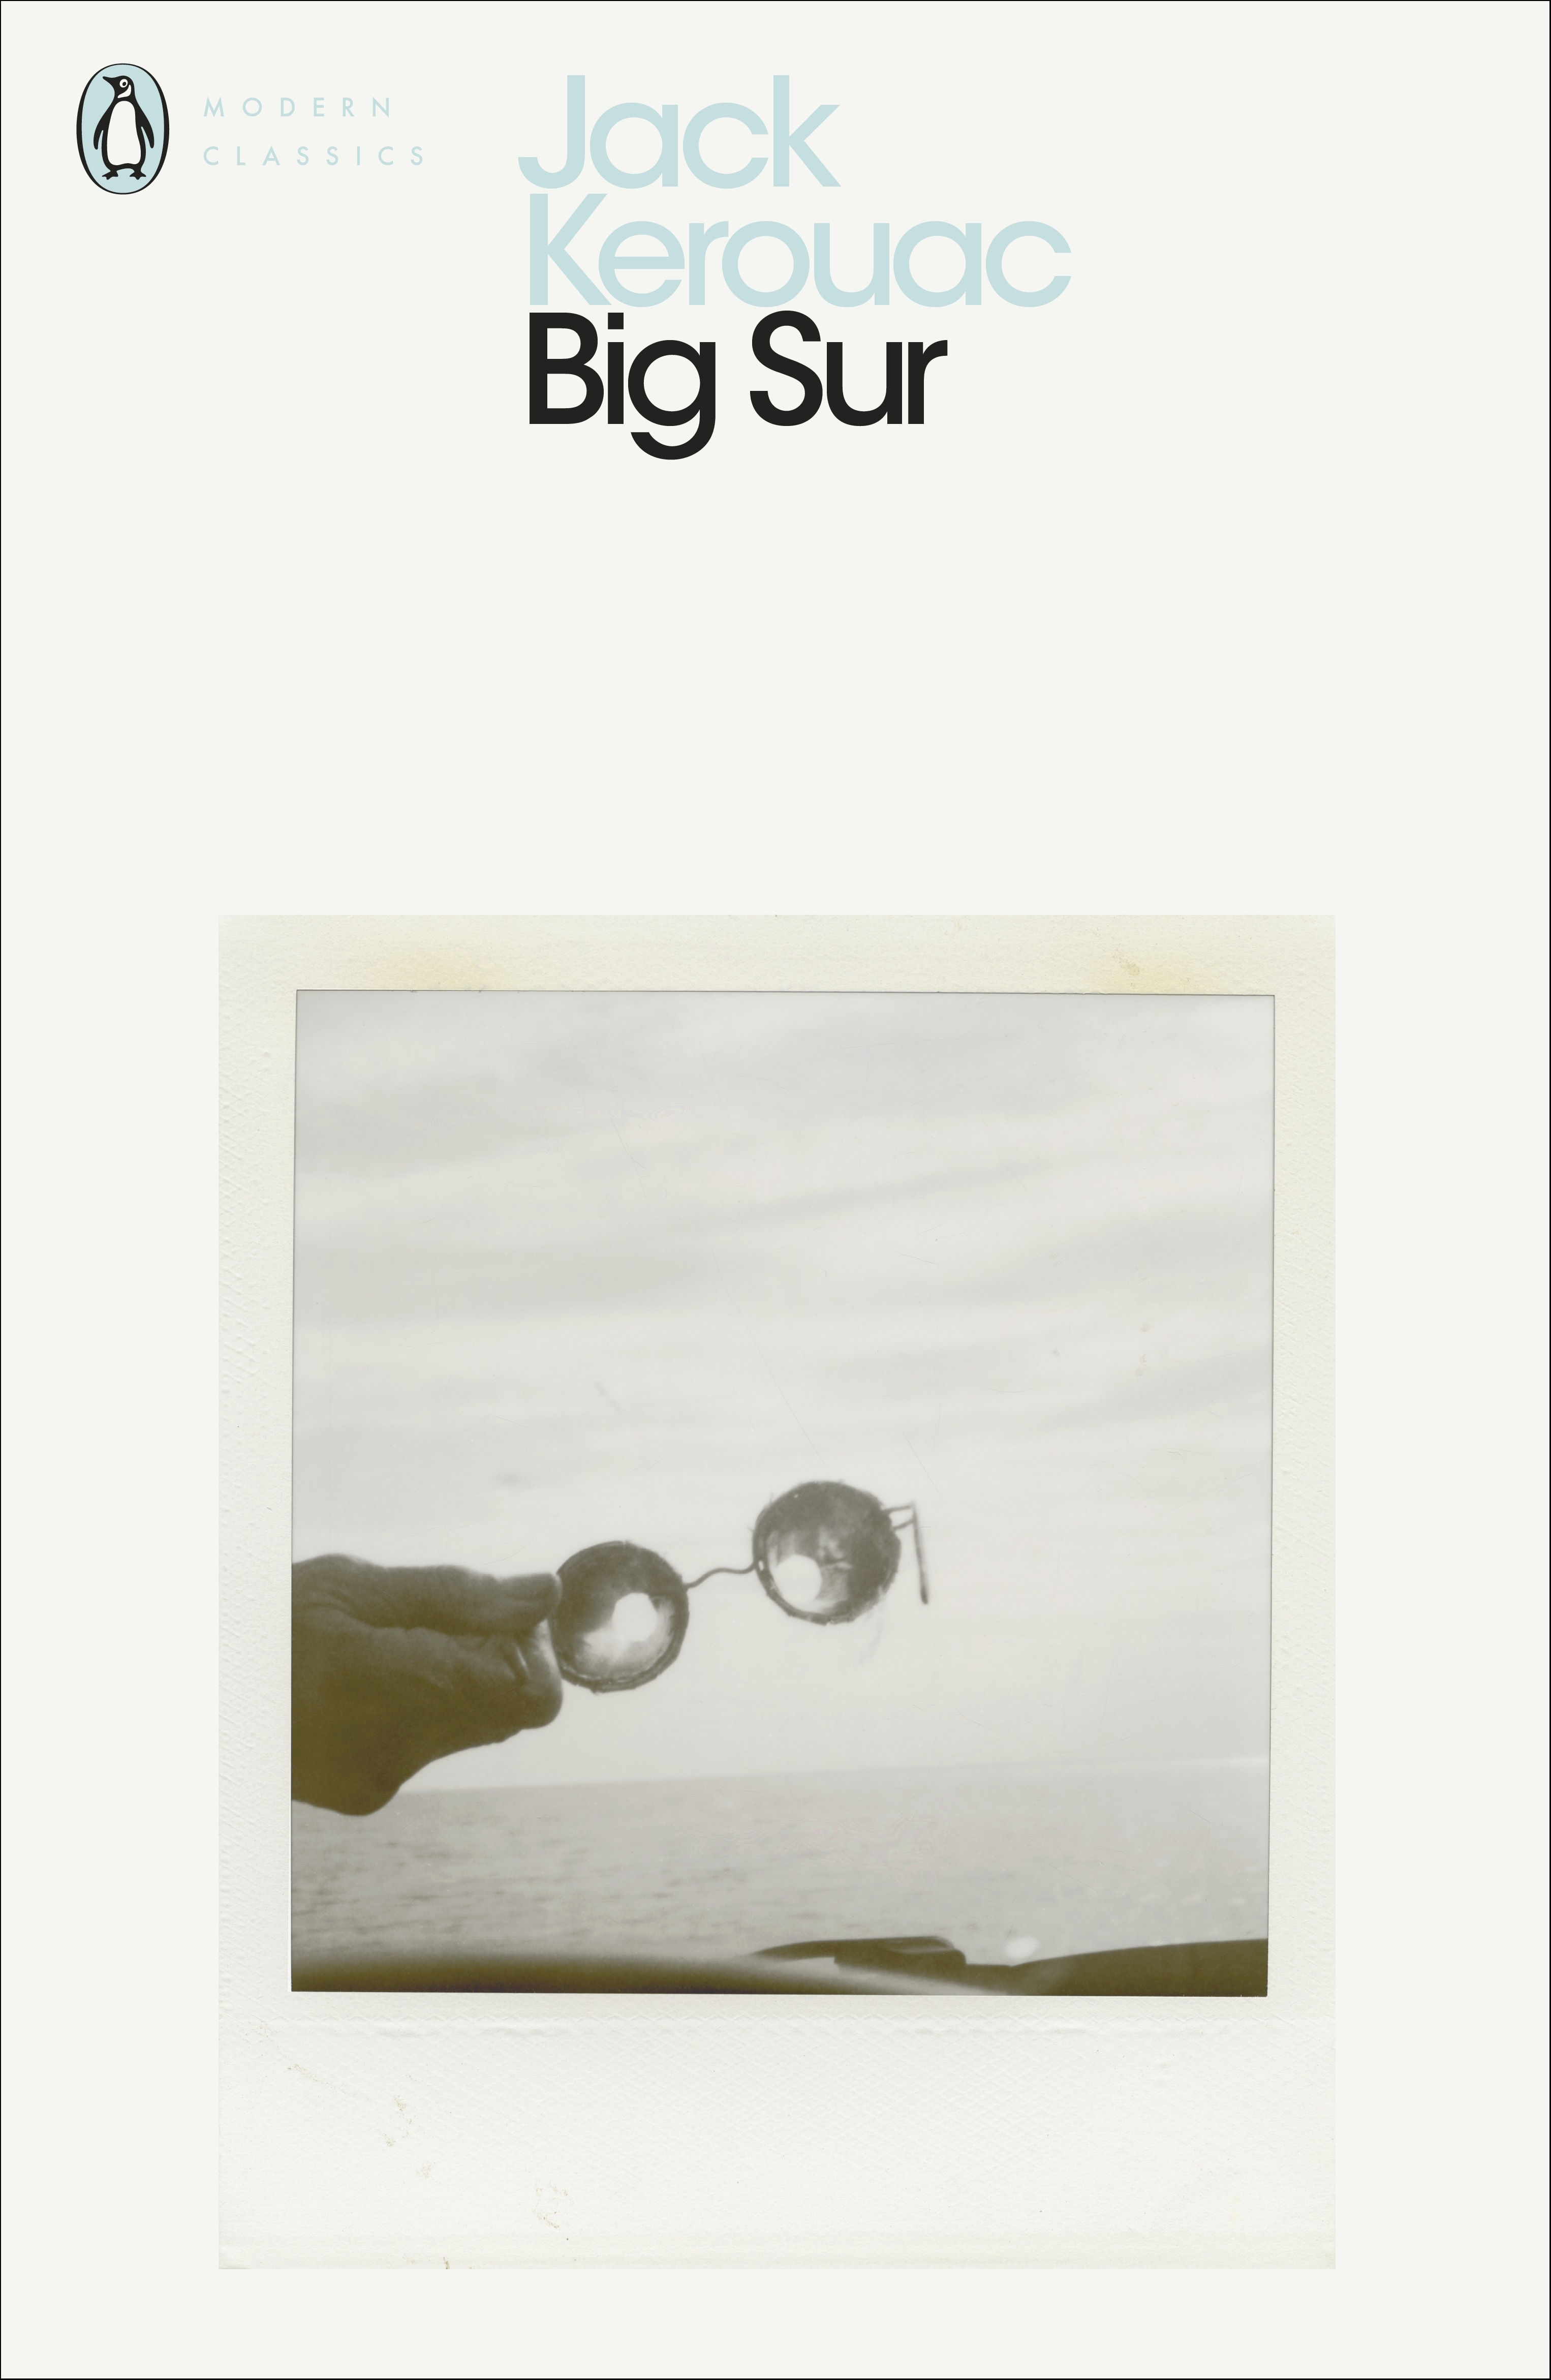 Book “Big Sur” by Jack Kerouac — May 3, 2012